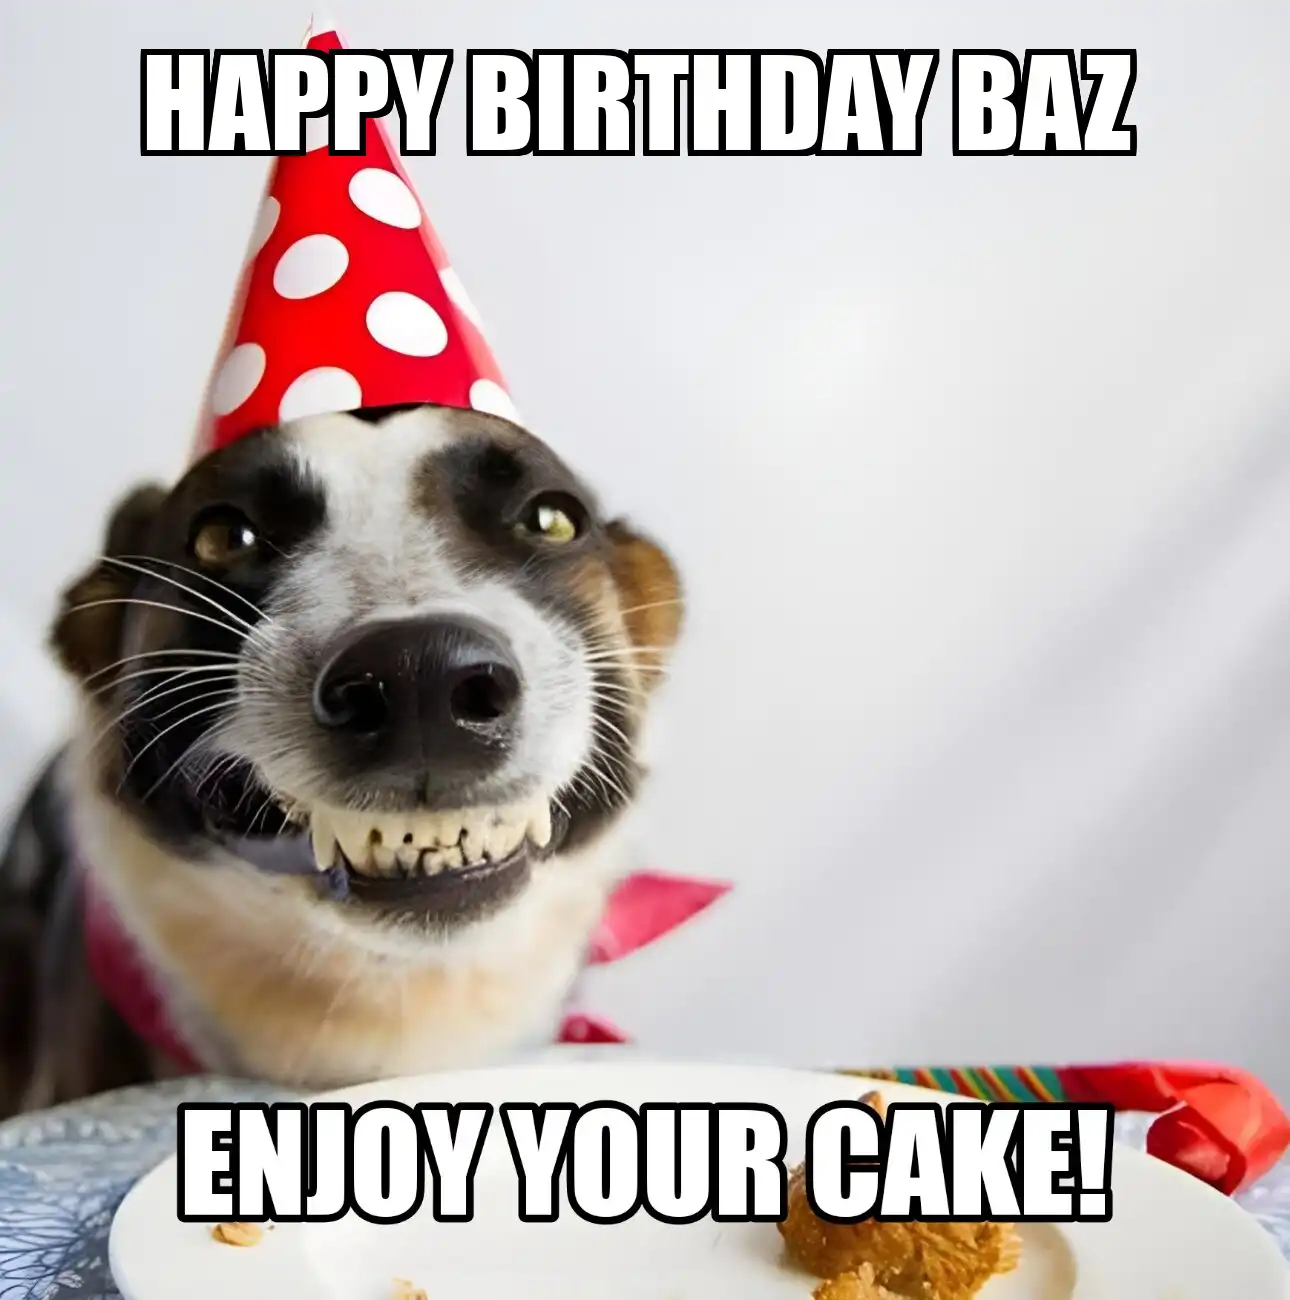 Happy Birthday Baz Enjoy Your Cake Dog Meme